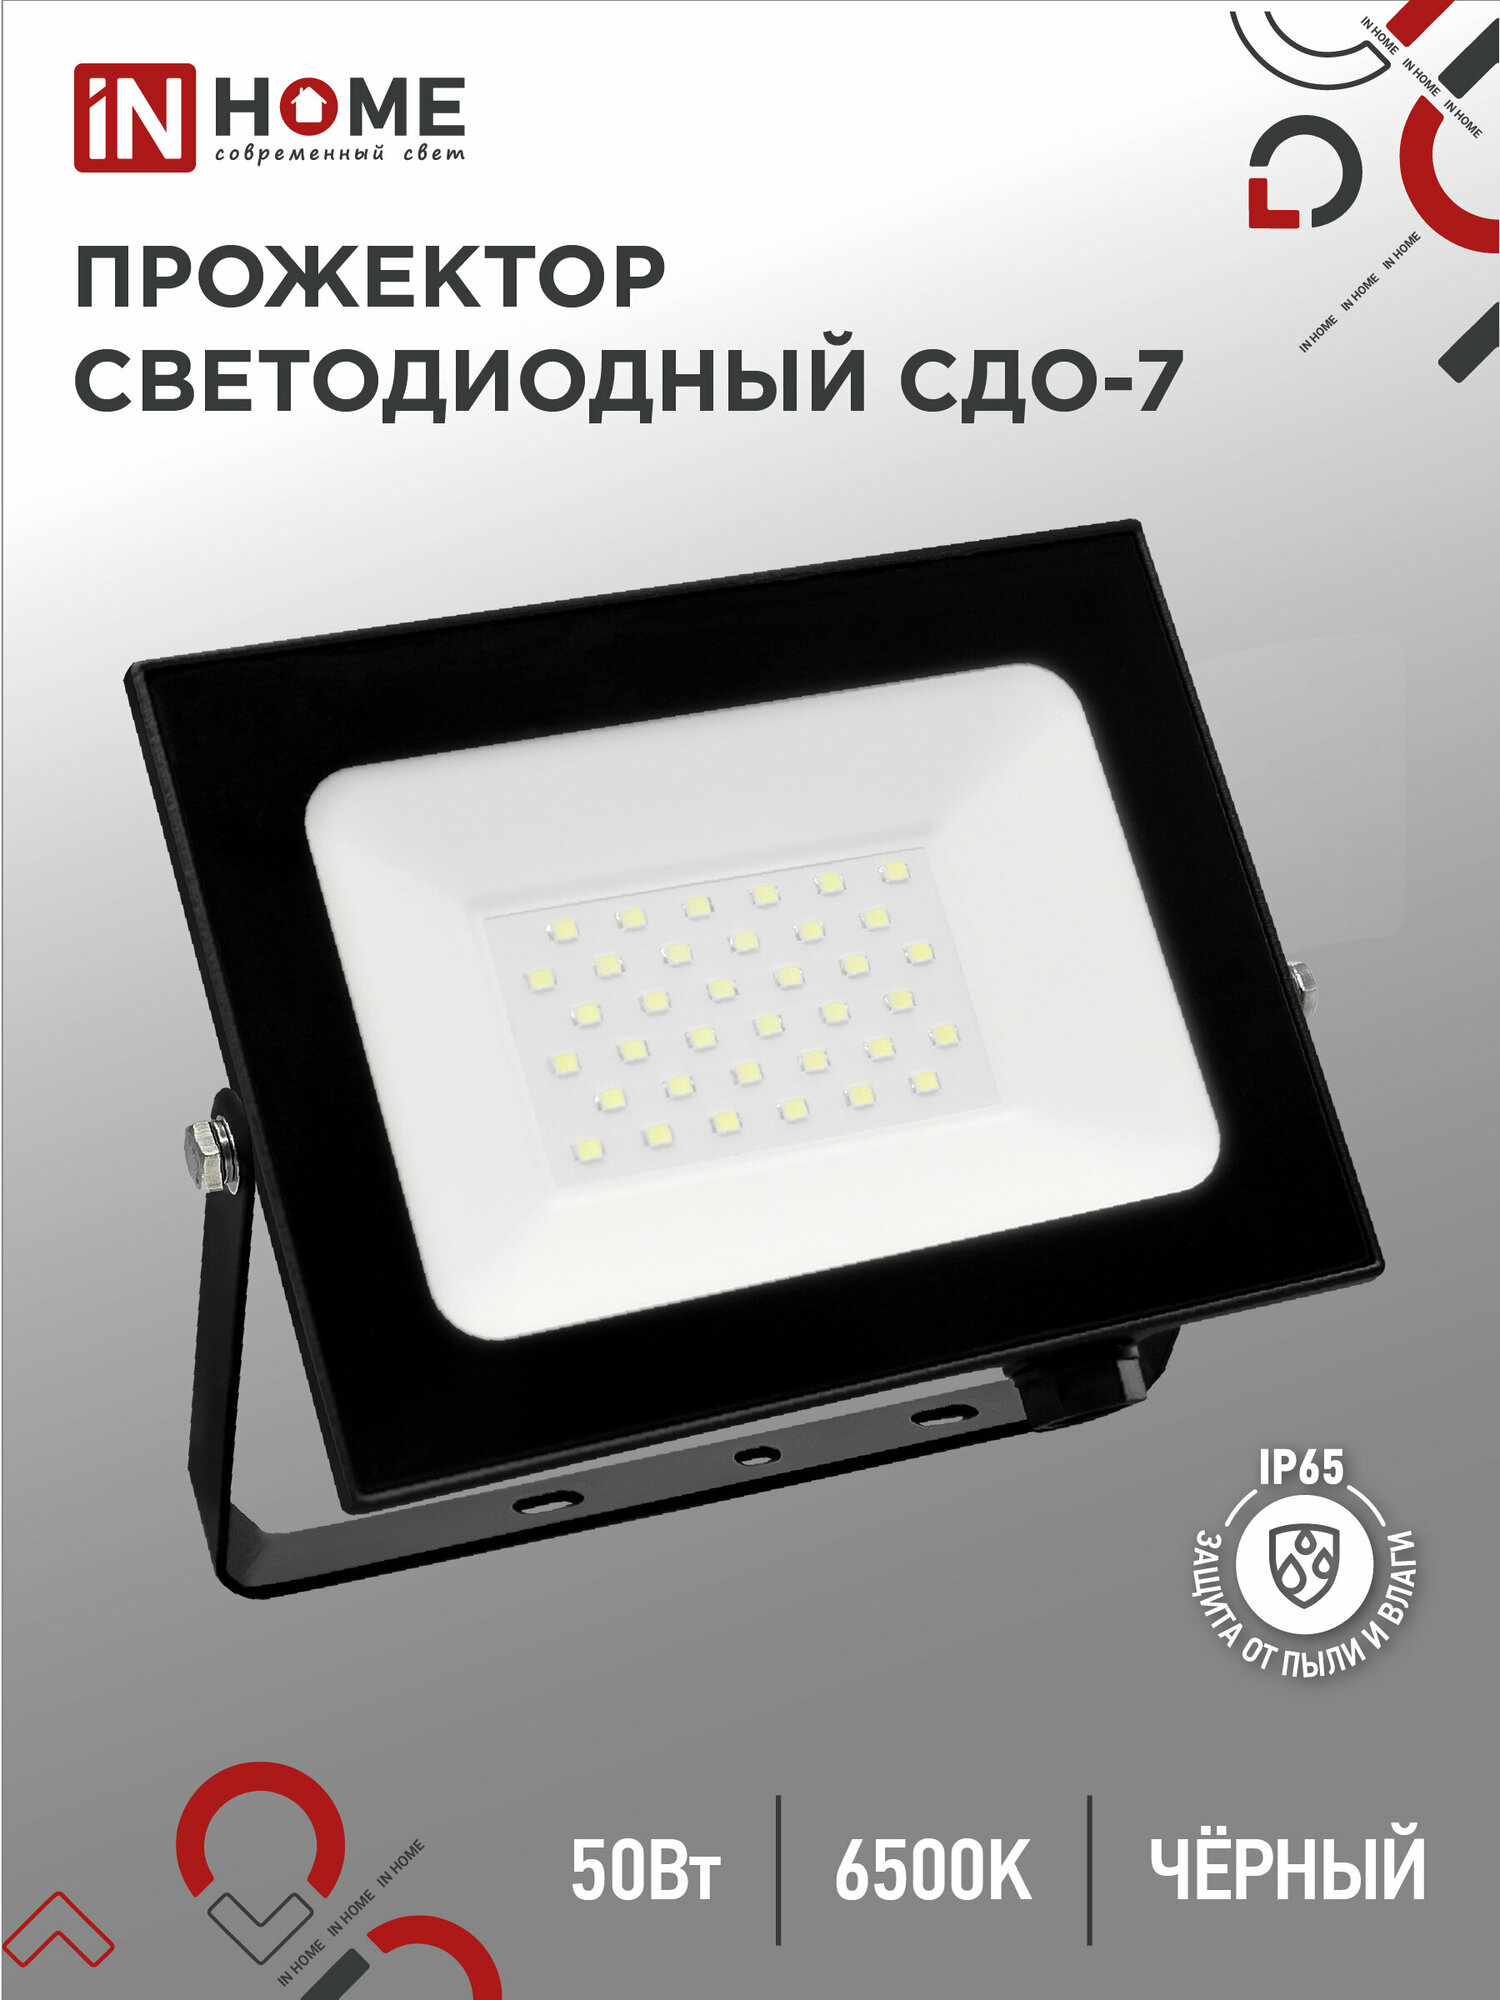 Прожектор светодиодный СДО-7 50Вт 230В 6500К IP65 черный IN HOME, арт. 4690612034638